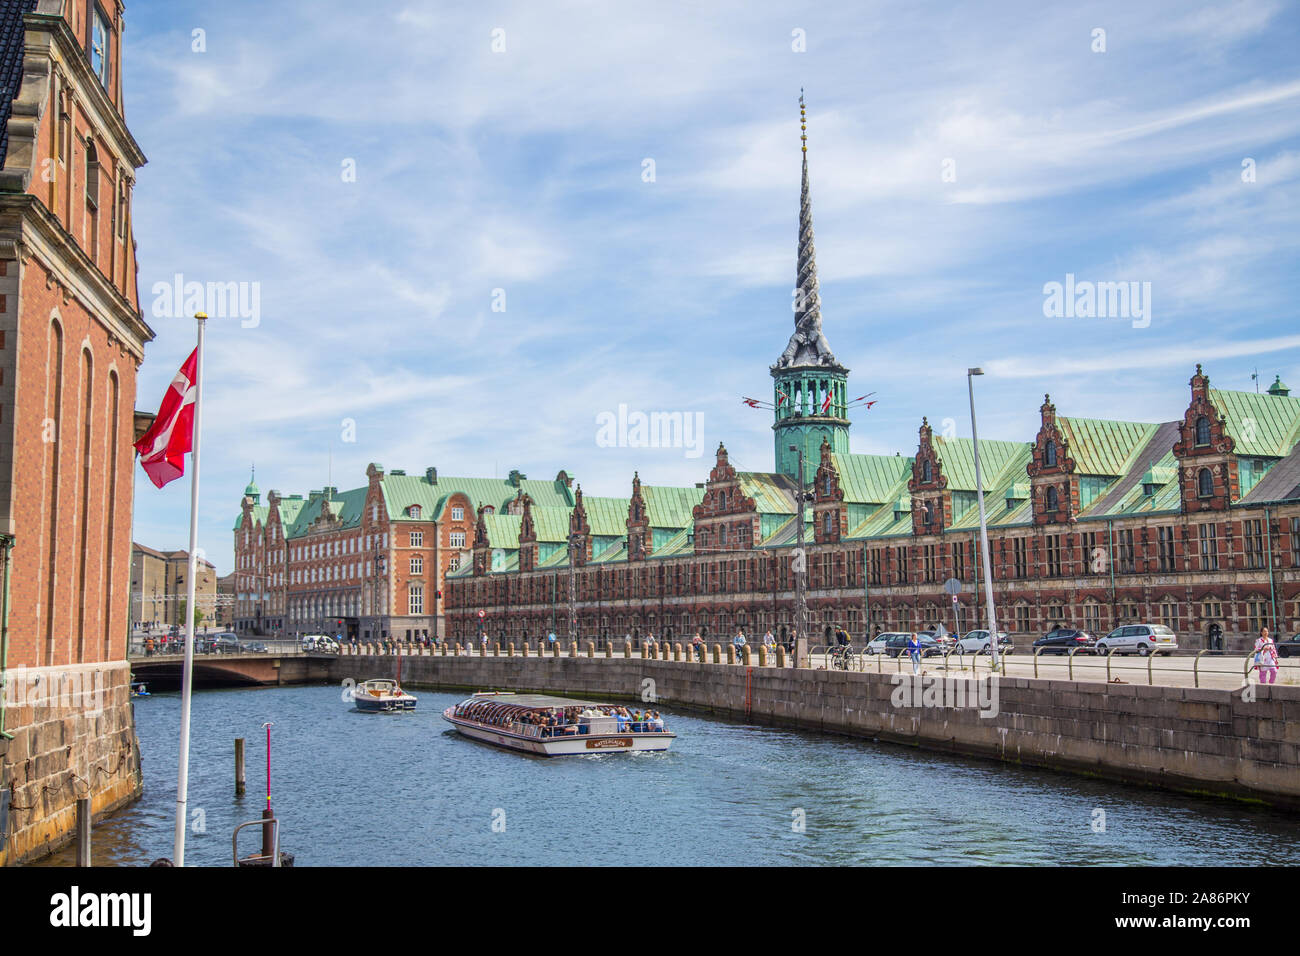 COPENHAGEN, Danimarca - 25 Maggio 2017: l'esterno della Borsen un vecchio stock exchange nel centro di Copenahgen durante il giorno. Le barche e la gente può essere visto. Foto Stock